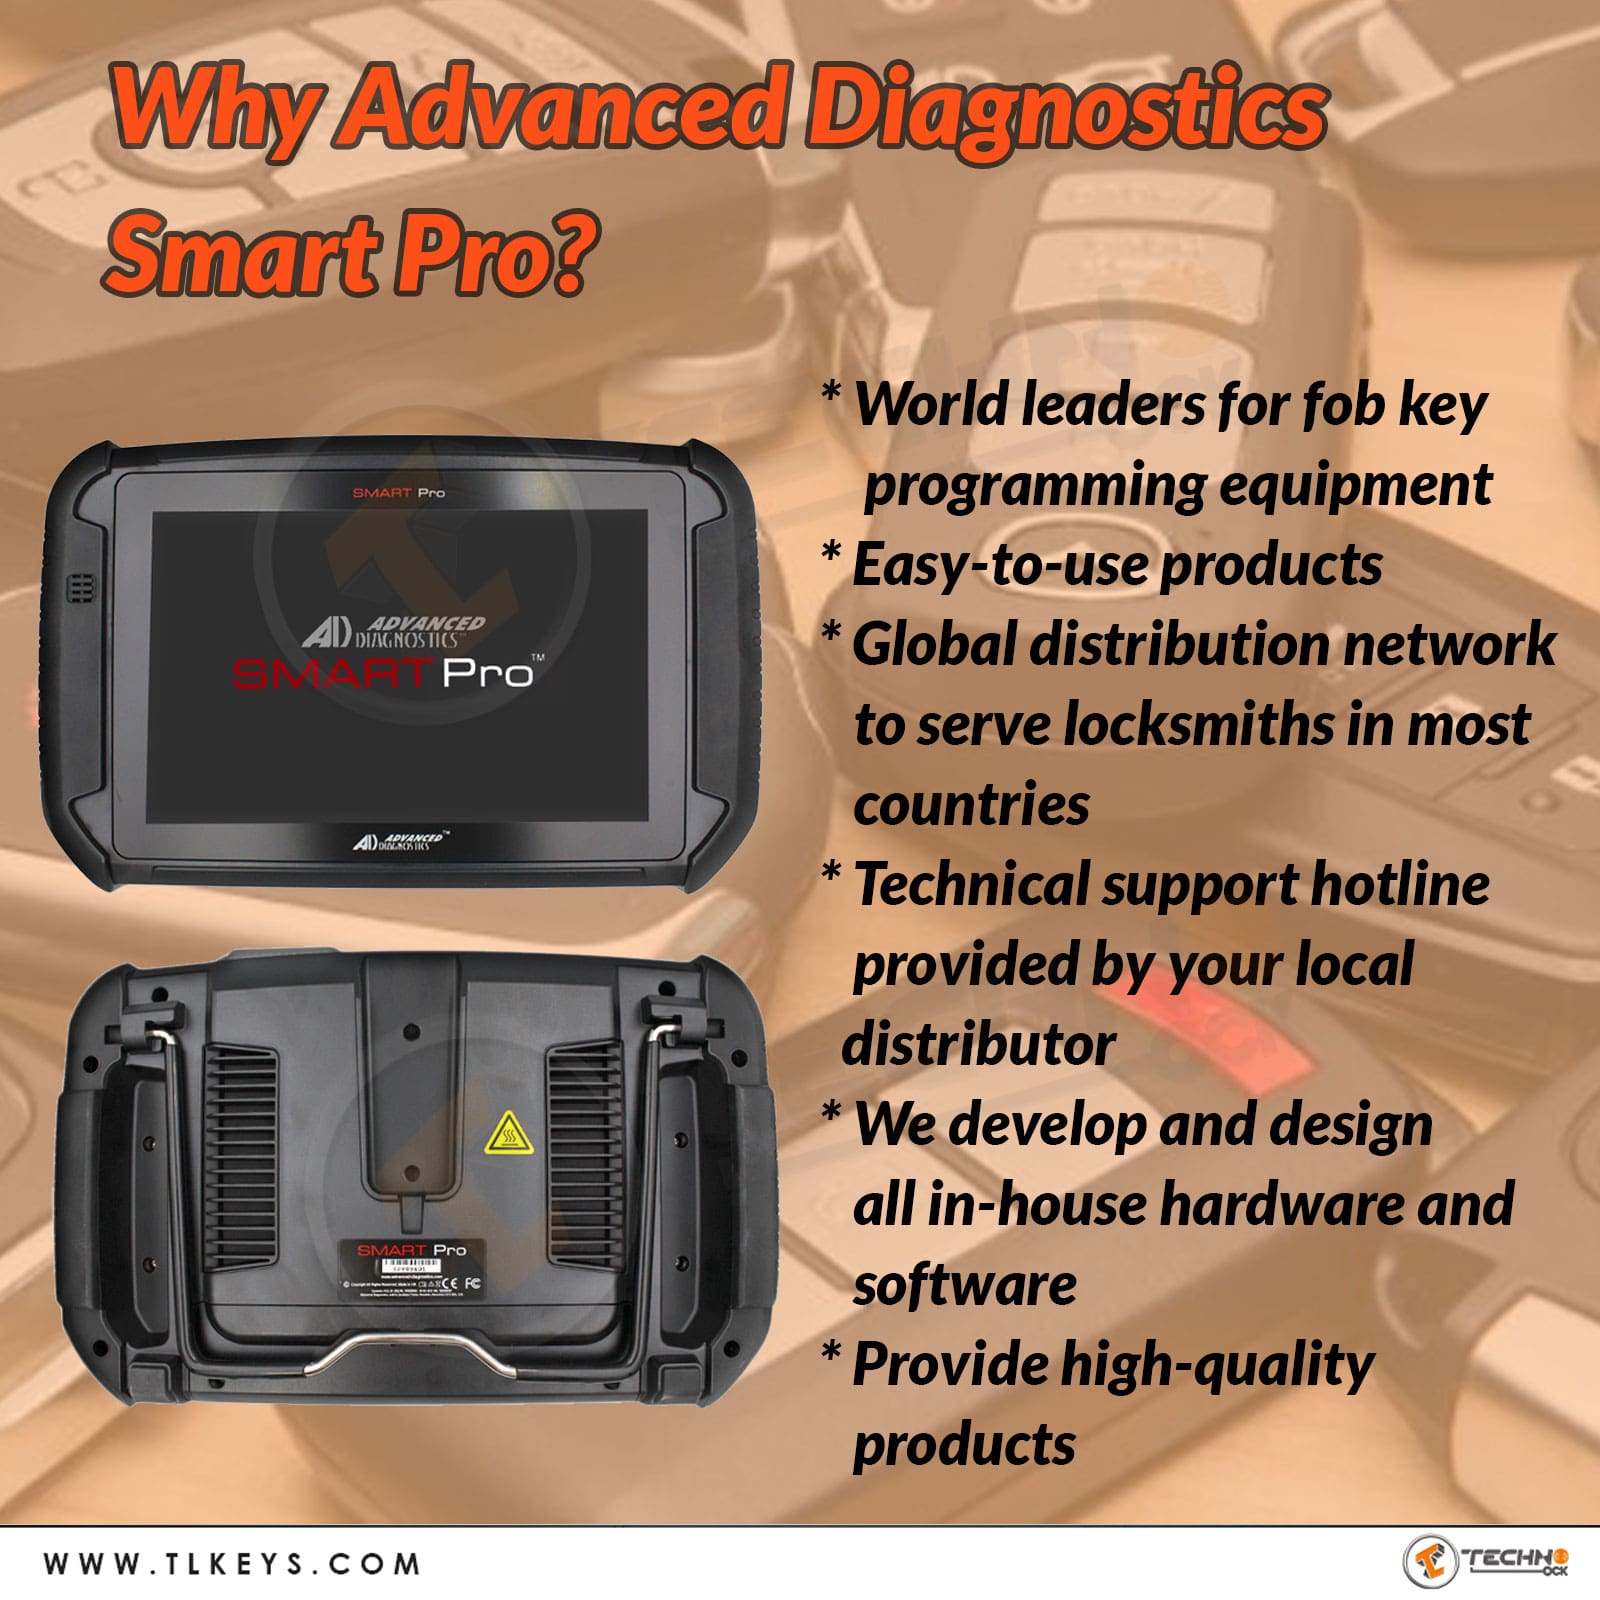 Advanced Diagnostics Smart Pro